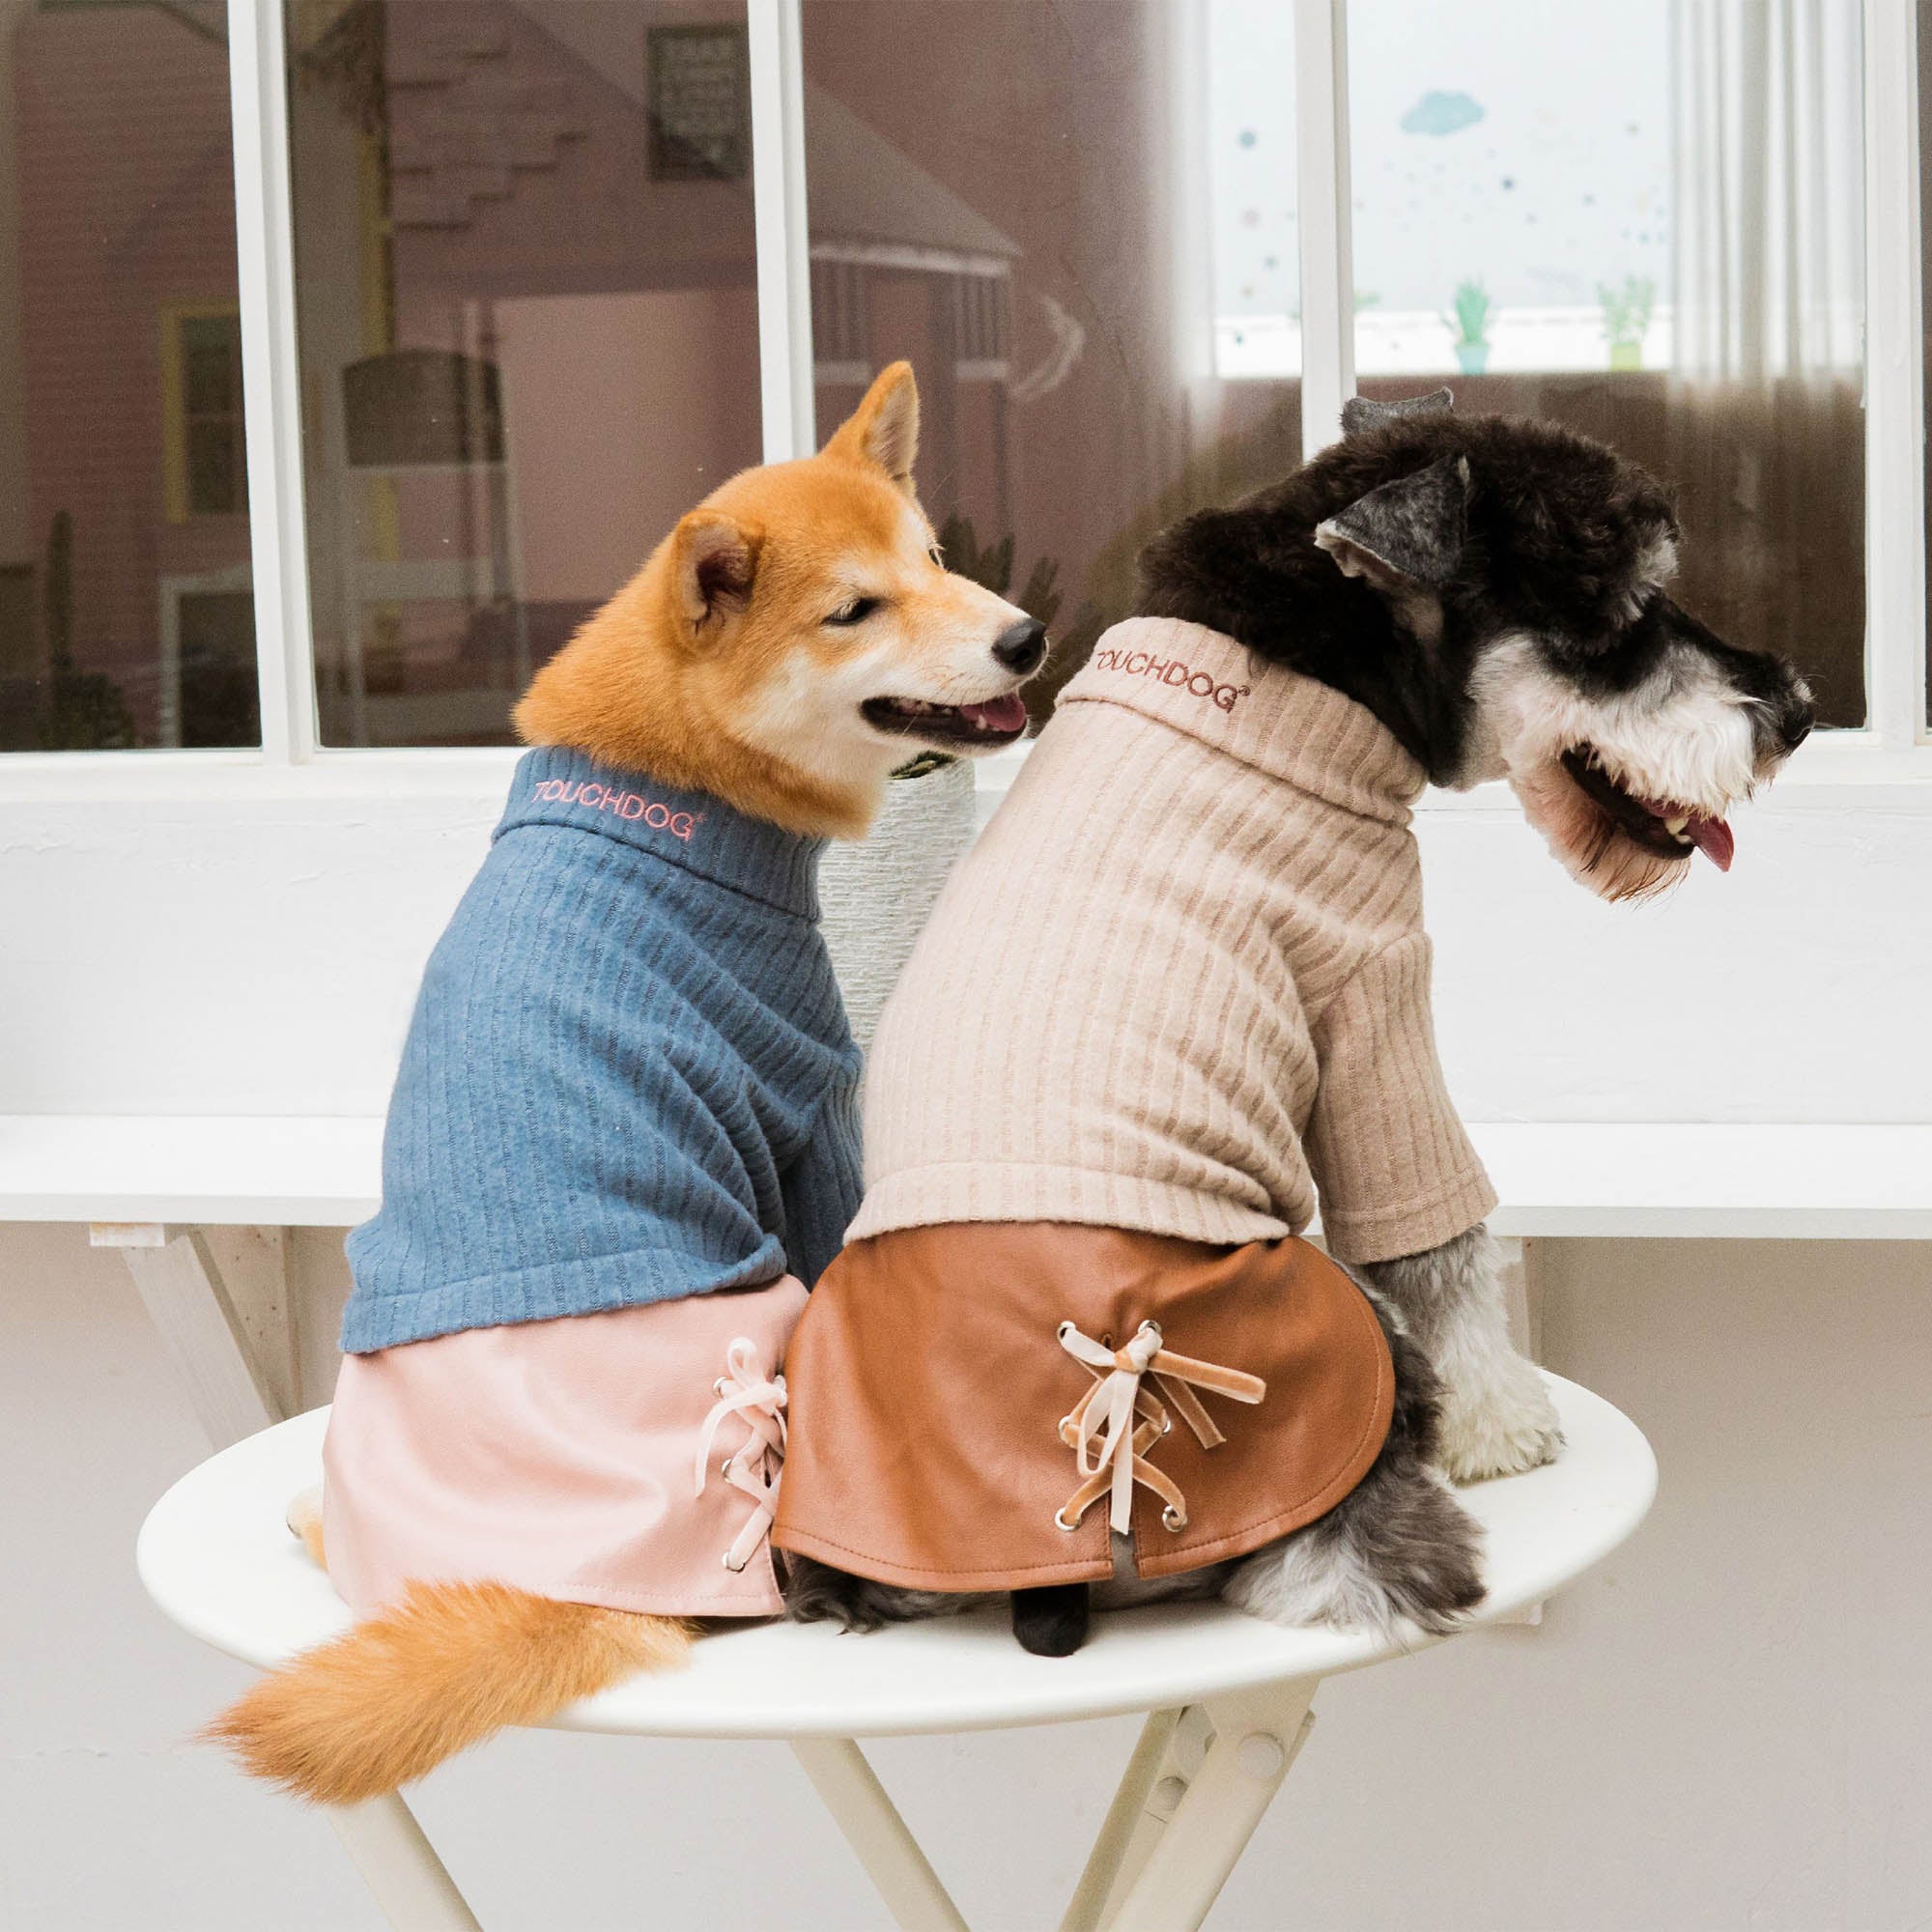 Touchdog® Modress Dog Sweater & Dress - Brown - Small